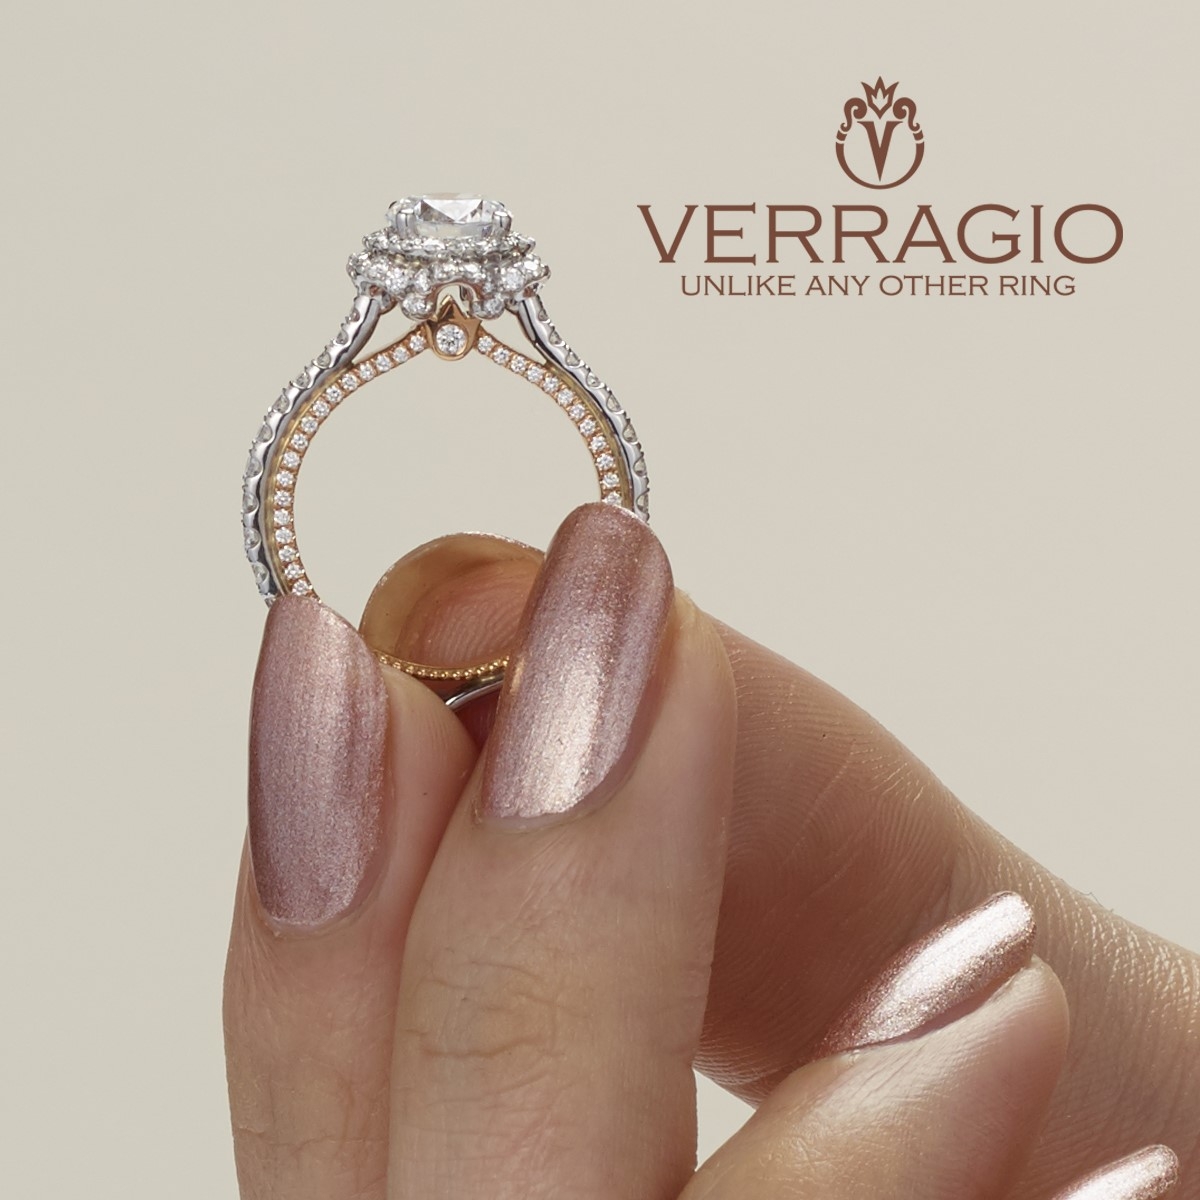 Verragio Couture-0467R-2WR 18 Karat Engagement Ring